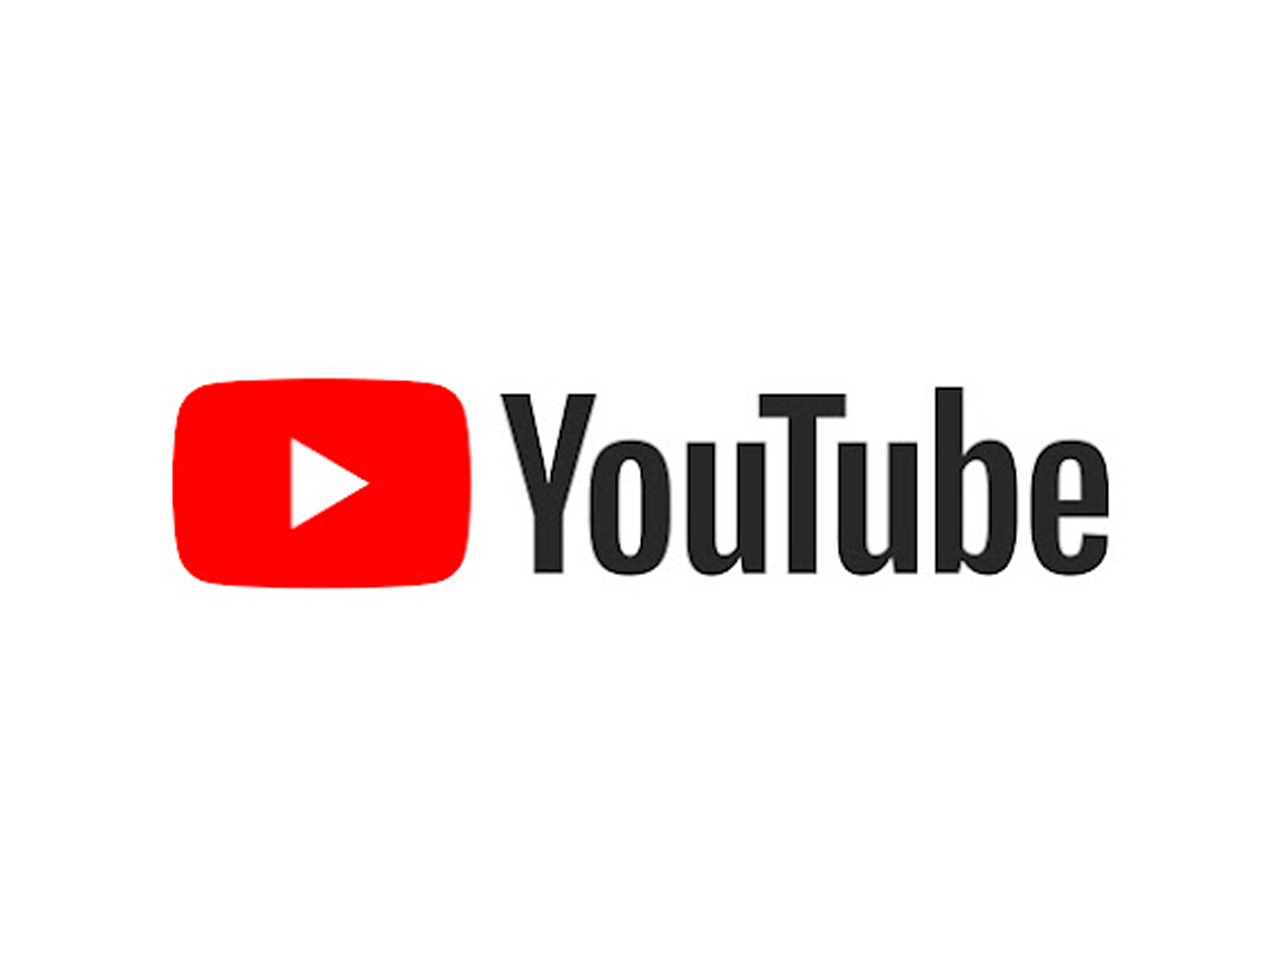 YouTube Marketing Company